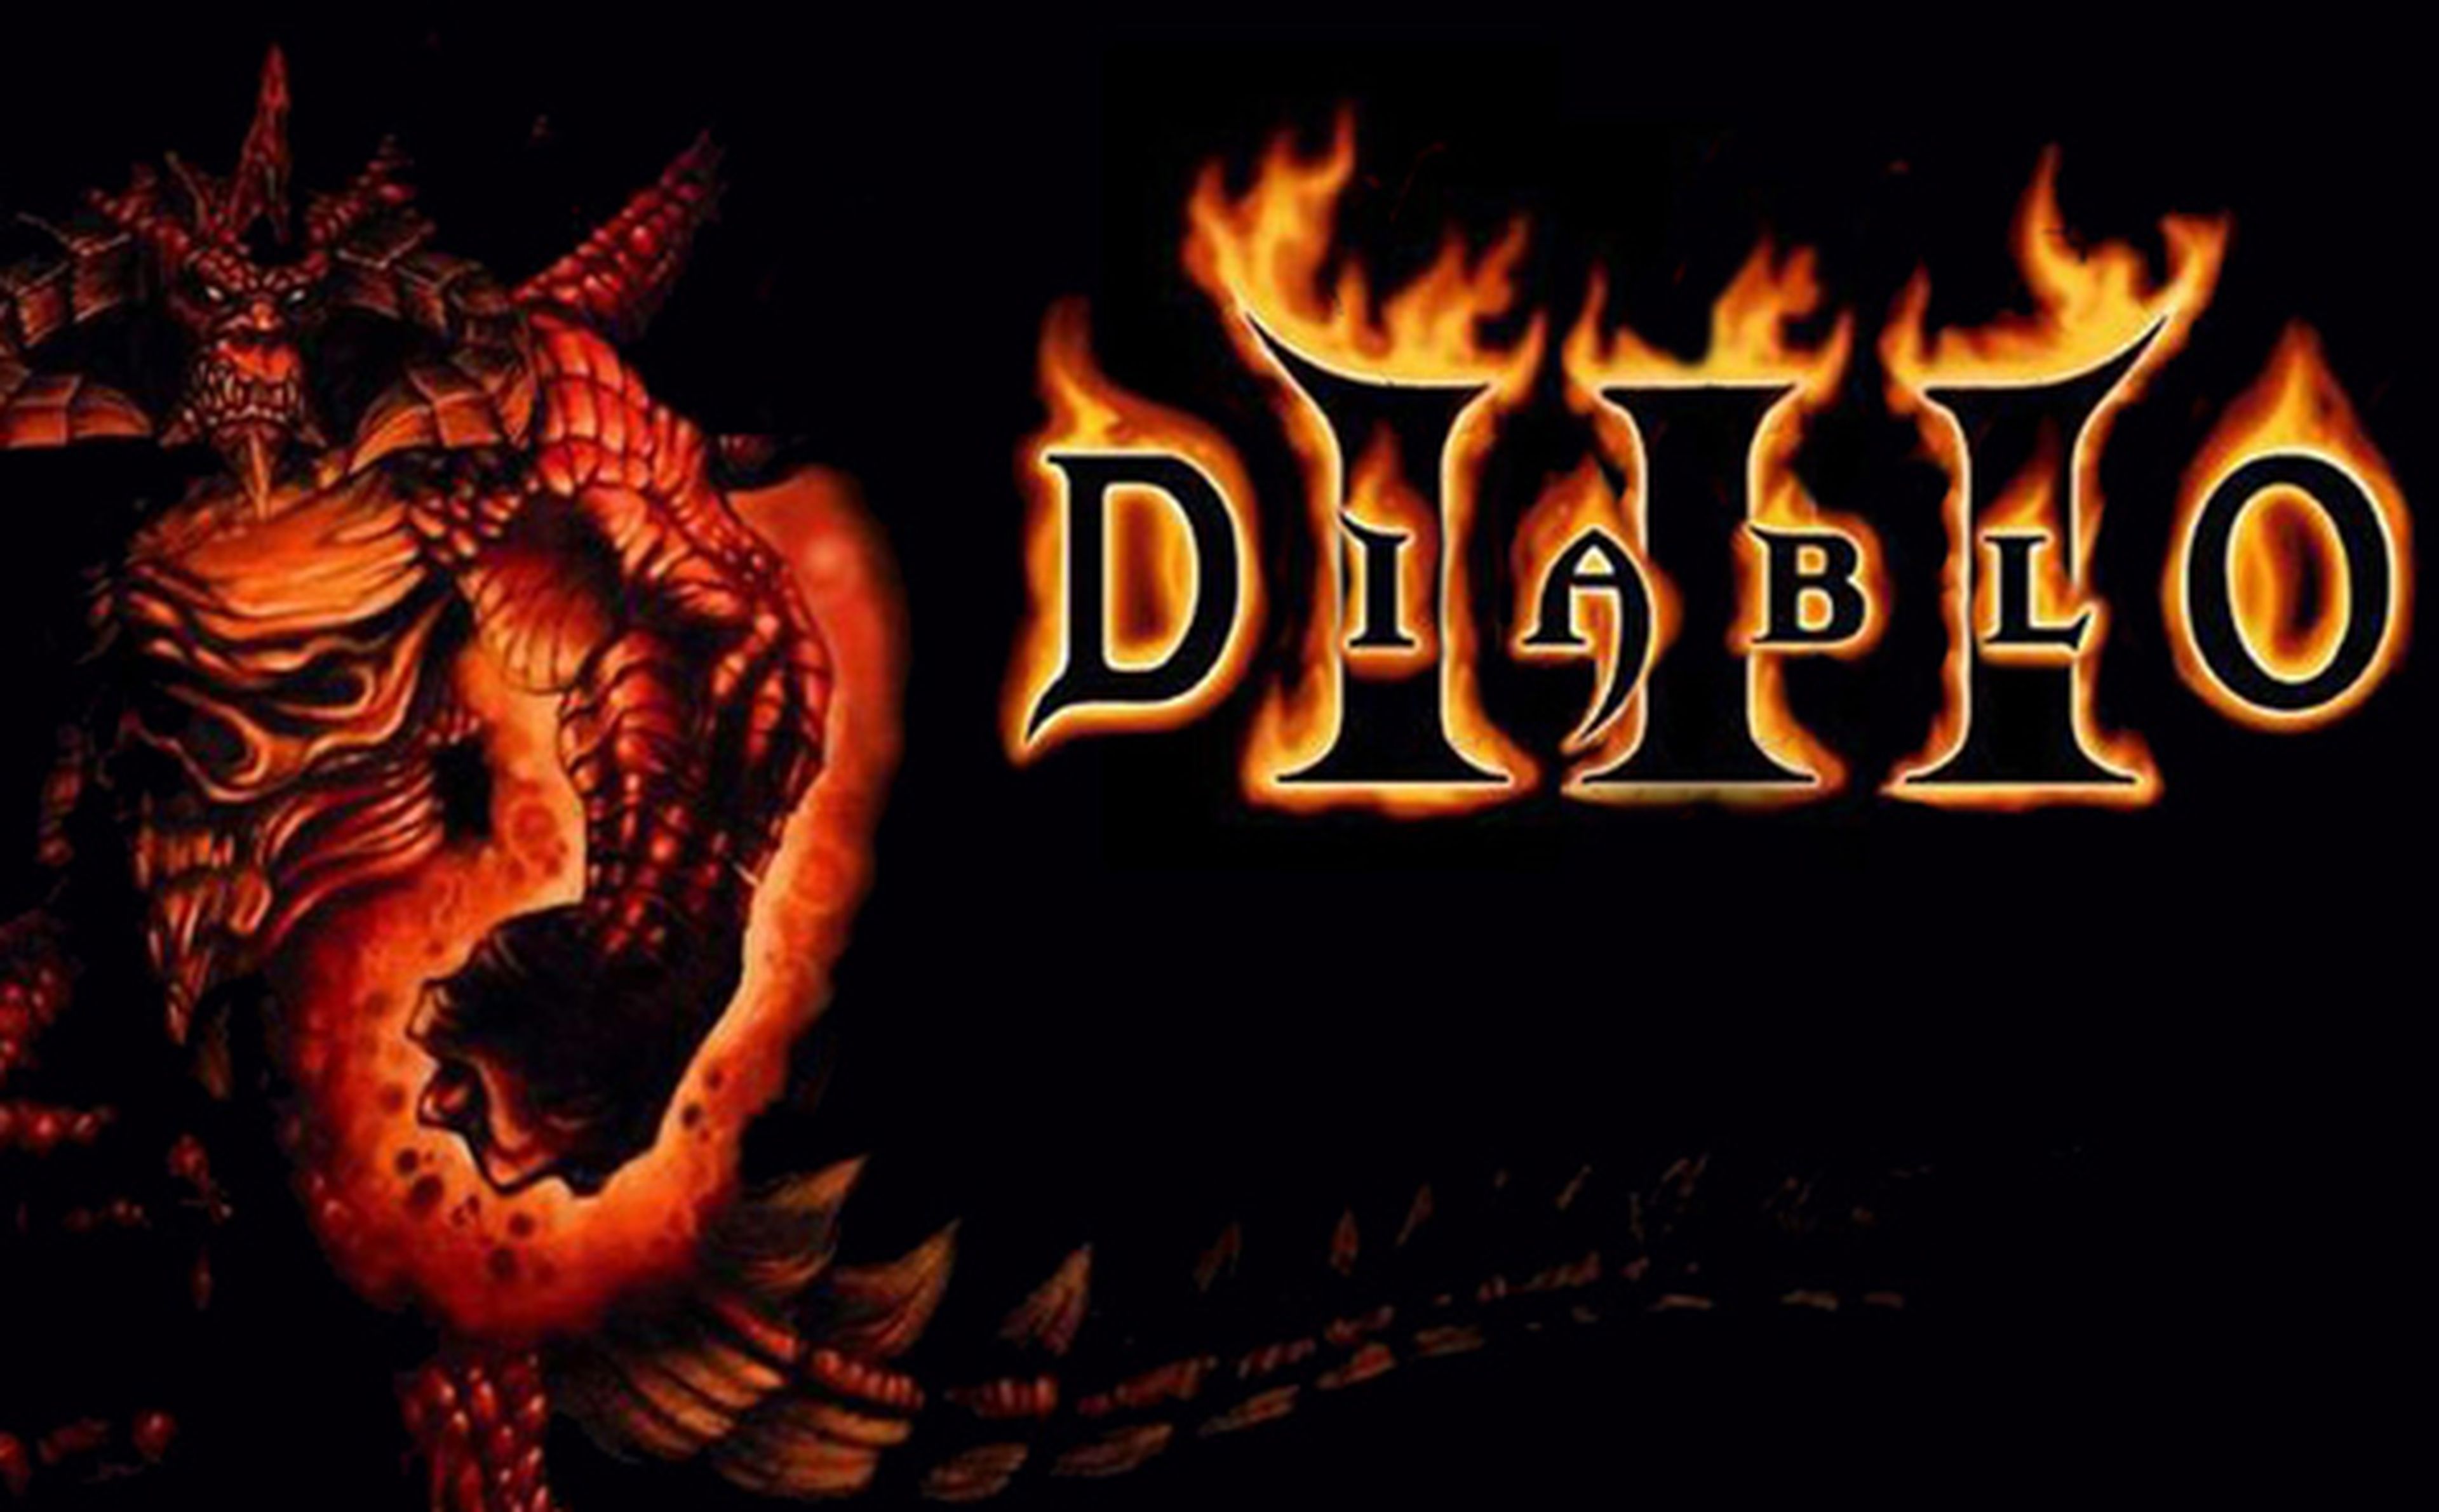 Es oficial... 'otra vez': Diablo III en consolas